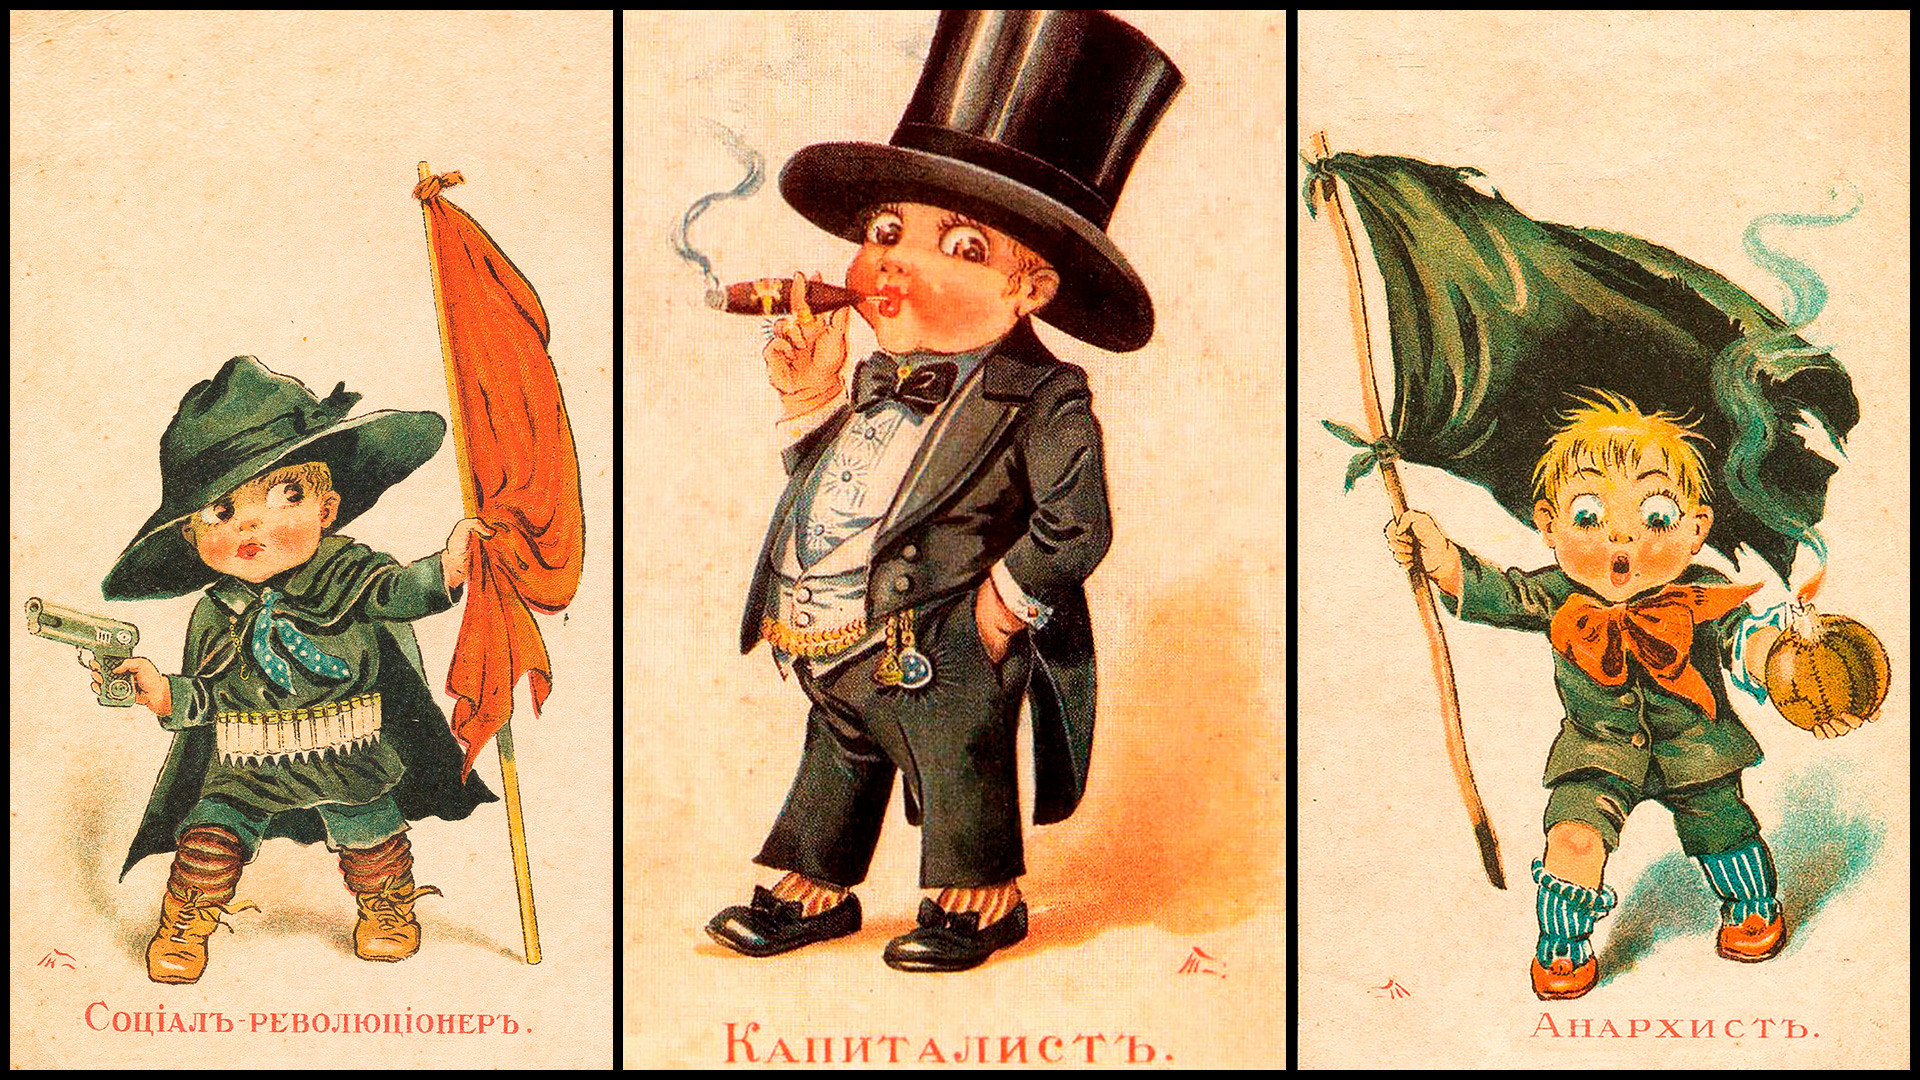 Иллюстрации к советским детективам. Бравый мужчина с усами до революции иллюстрации из детских книг. Как нарисовать революцию детям в 5 лет.